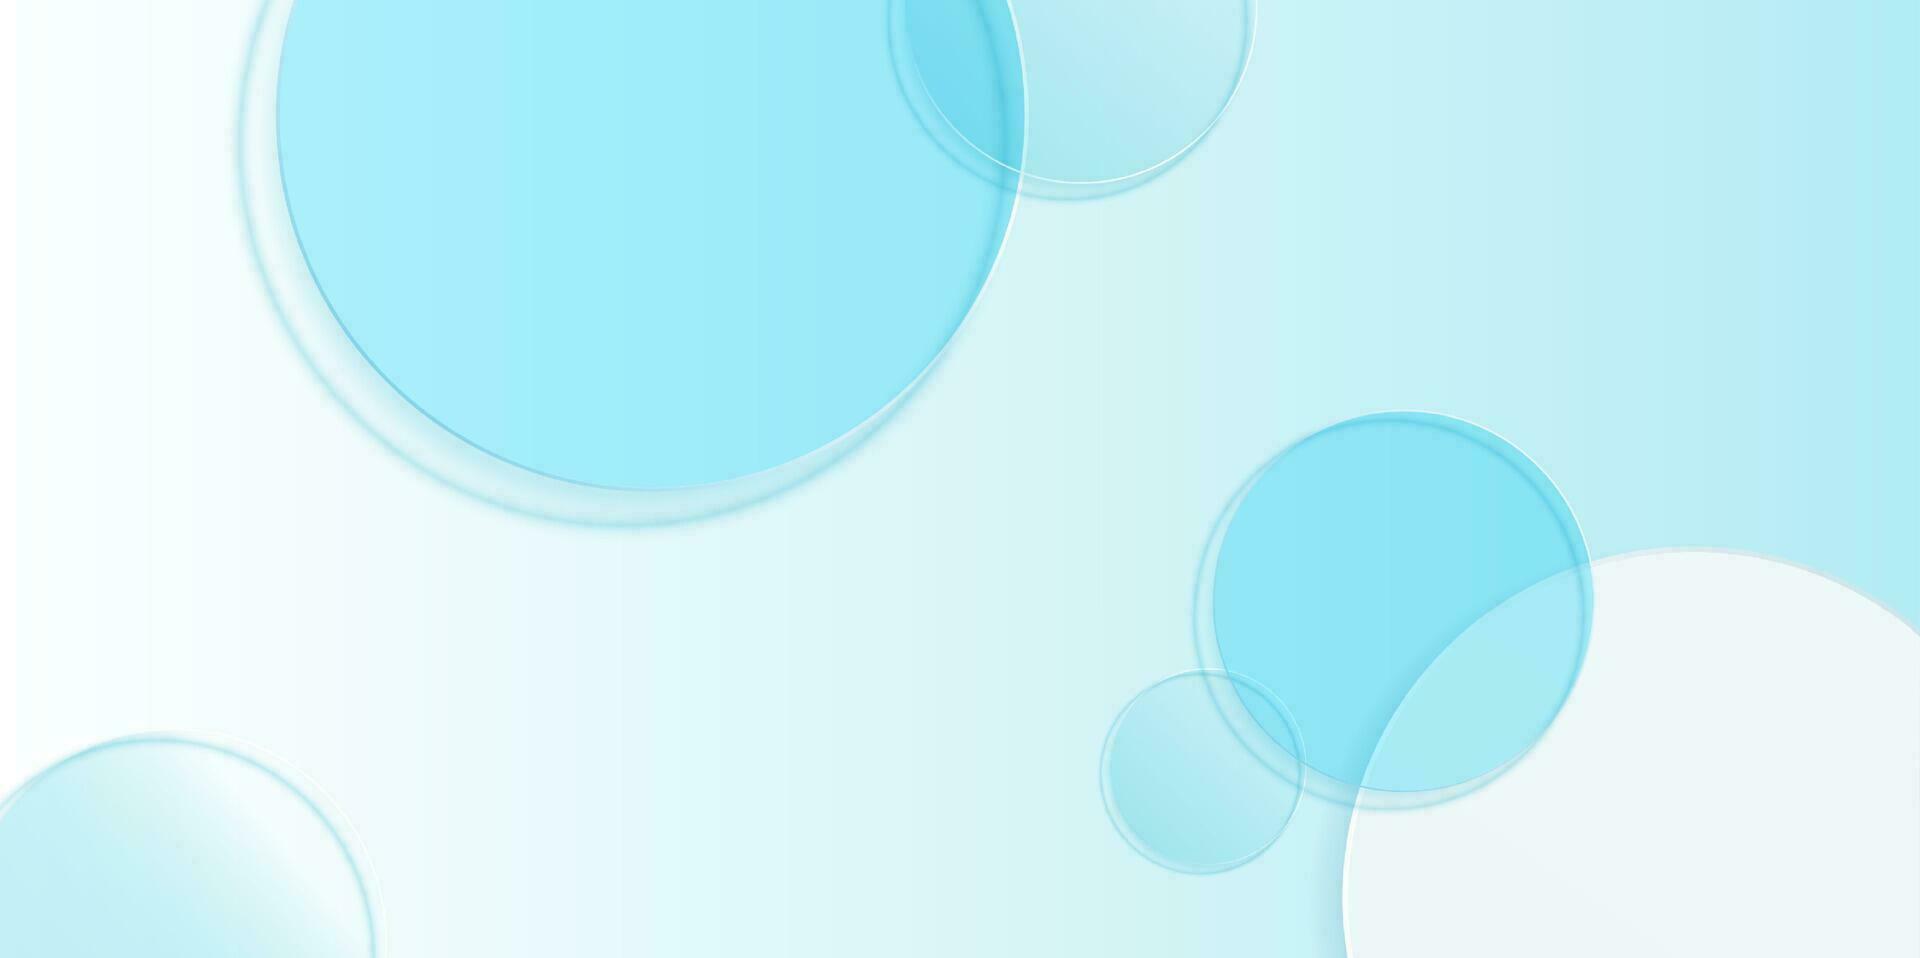 kunstmatig Product Scherm achtergrond met blauw glas in top visie. ontwerp van circulaire glas schijven voor verpakking presentatie. vector ontwerp.